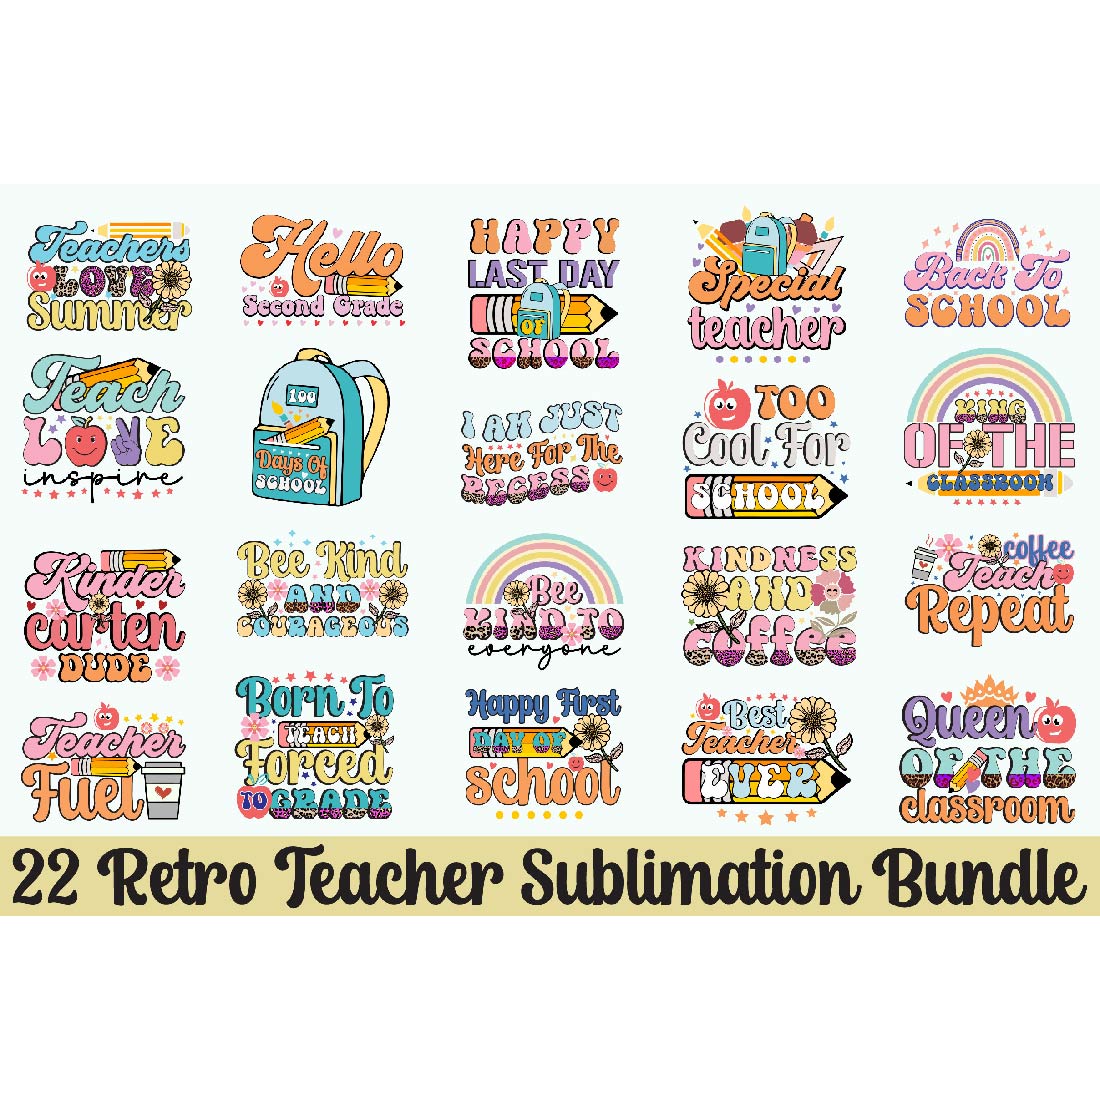 Retro Teacher Sublimation Bundle cover image.